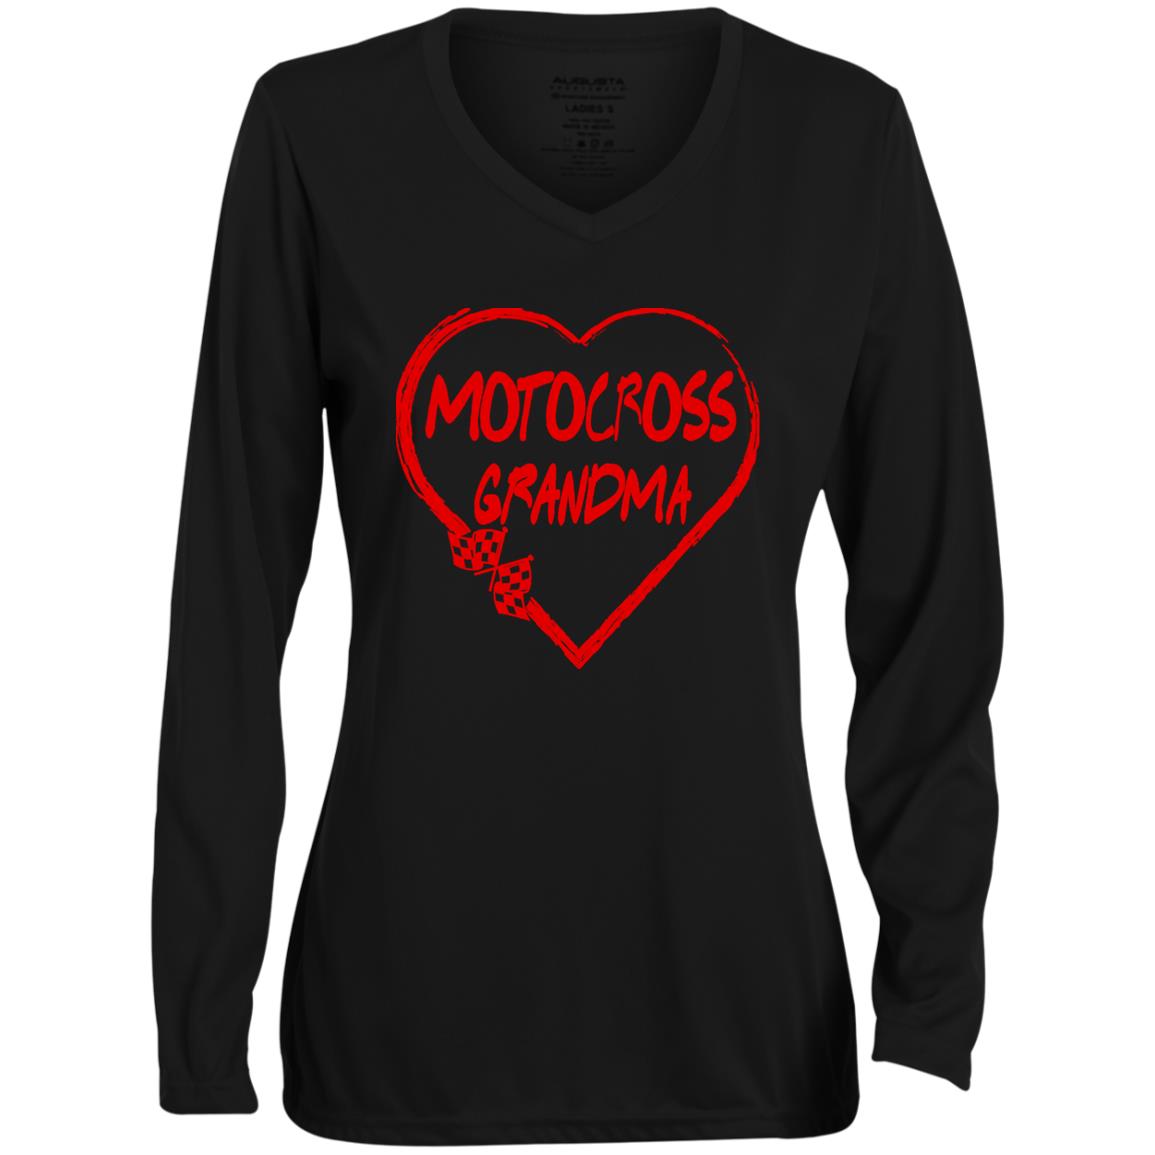 Motocross Grandma Heart Ladies' Moisture-Wicking Long Sleeve V-Neck Tee